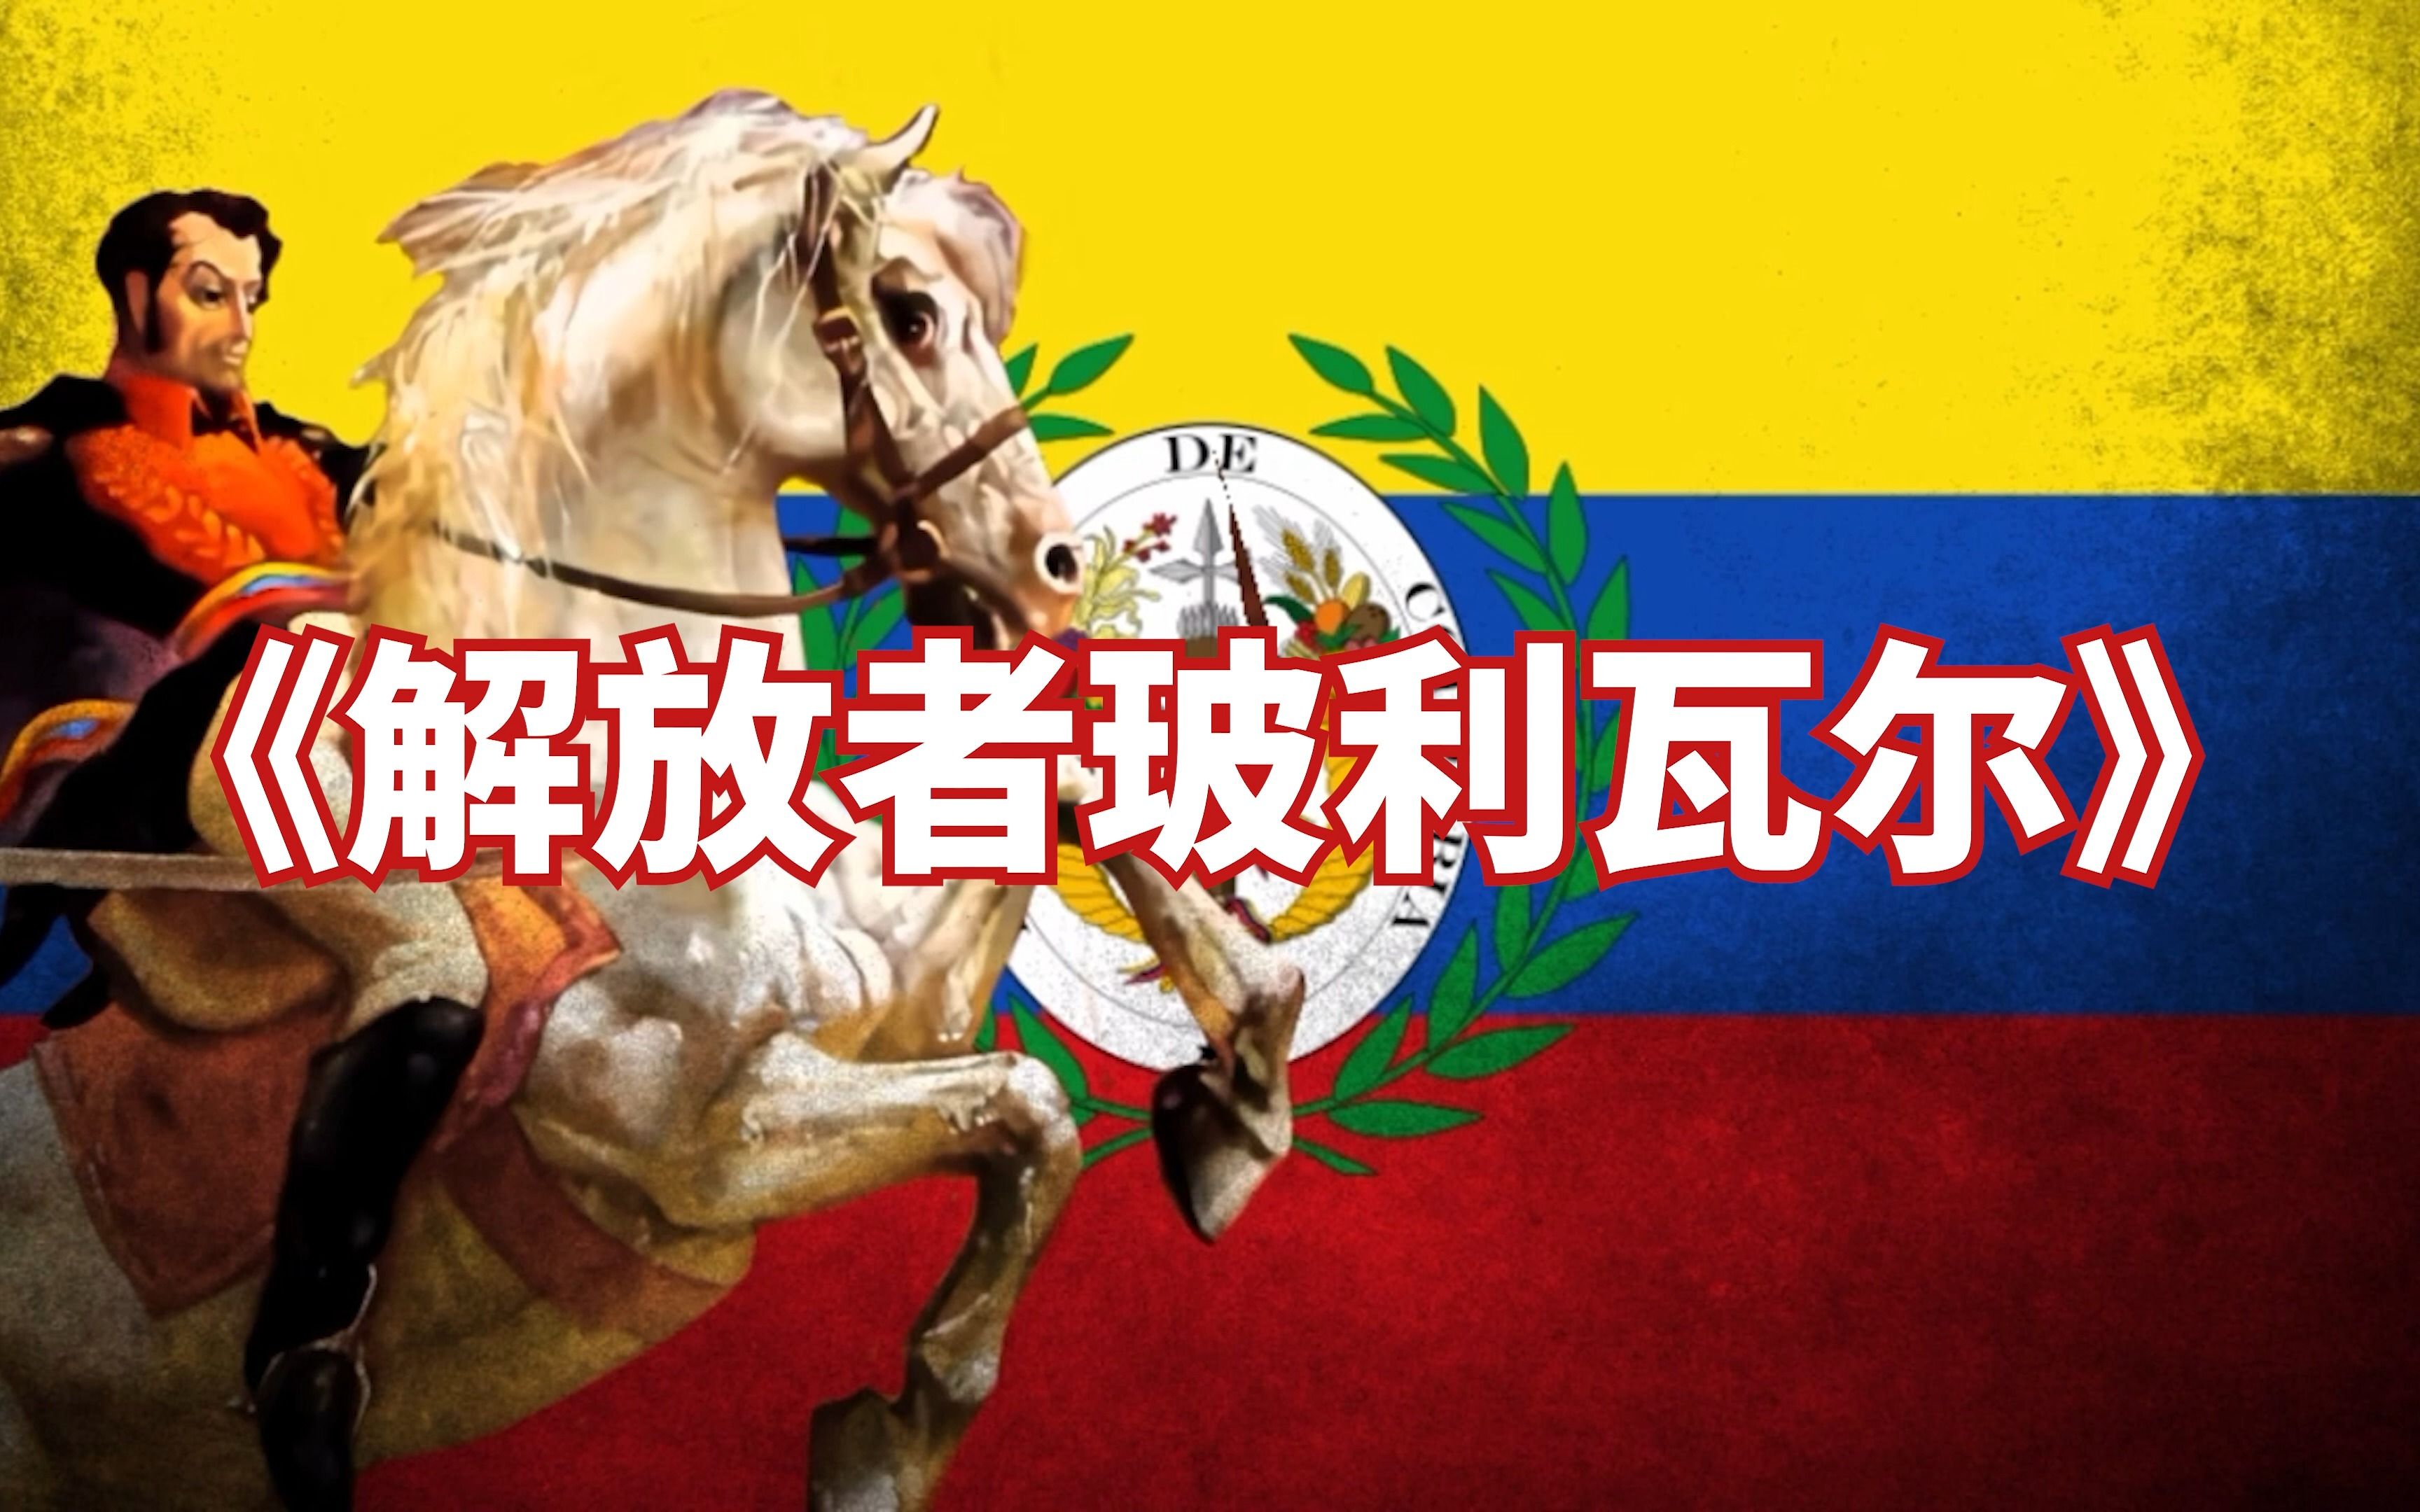 【大哥伦比亚爱国歌曲】《解放者玻利瓦尔》Bolivar Libertador || Canción Patriótica Grancolombina